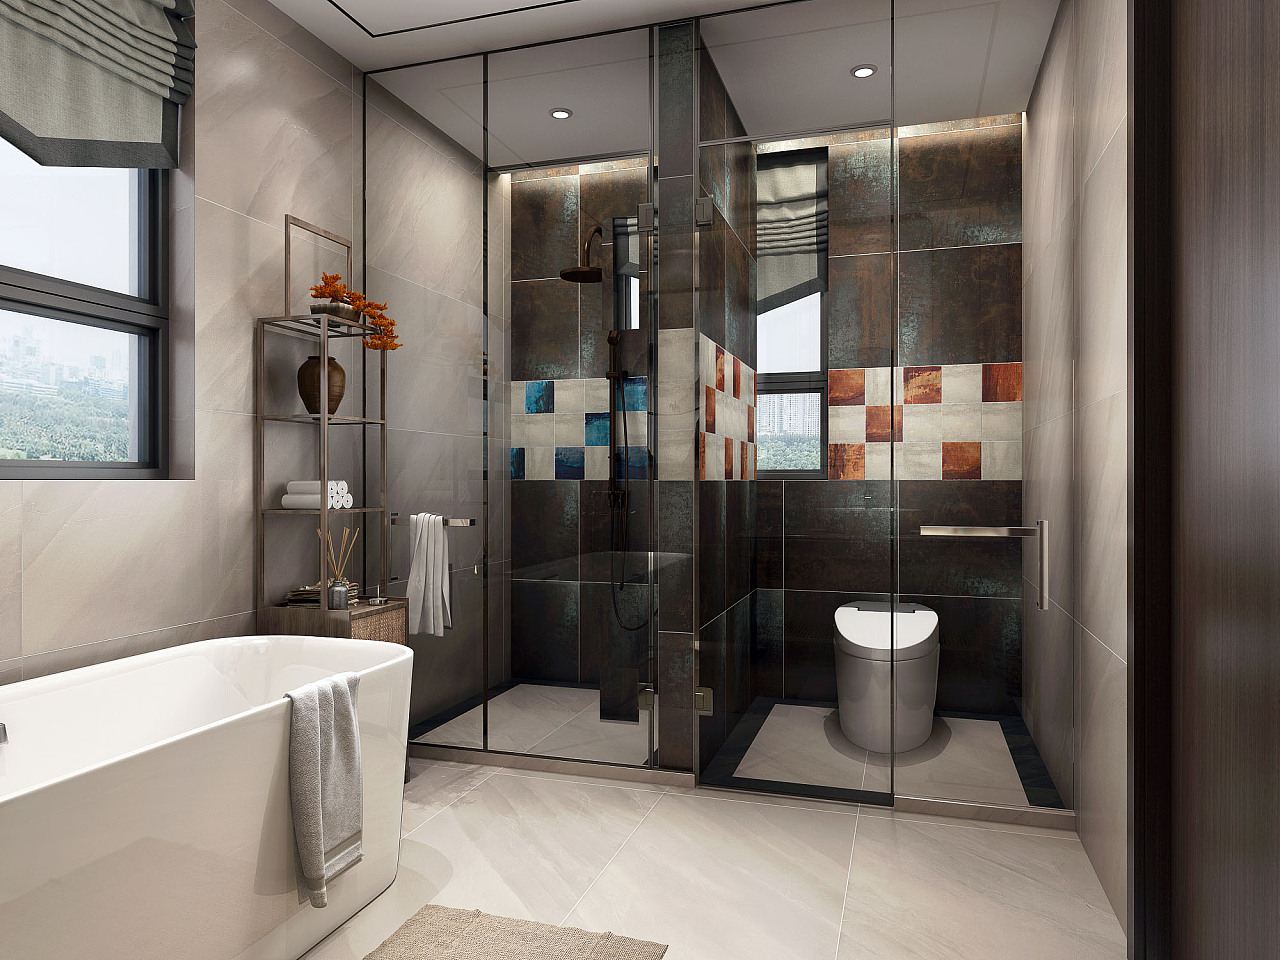 现代卧室卫浴 - 效果图交流区-建E室内设计网